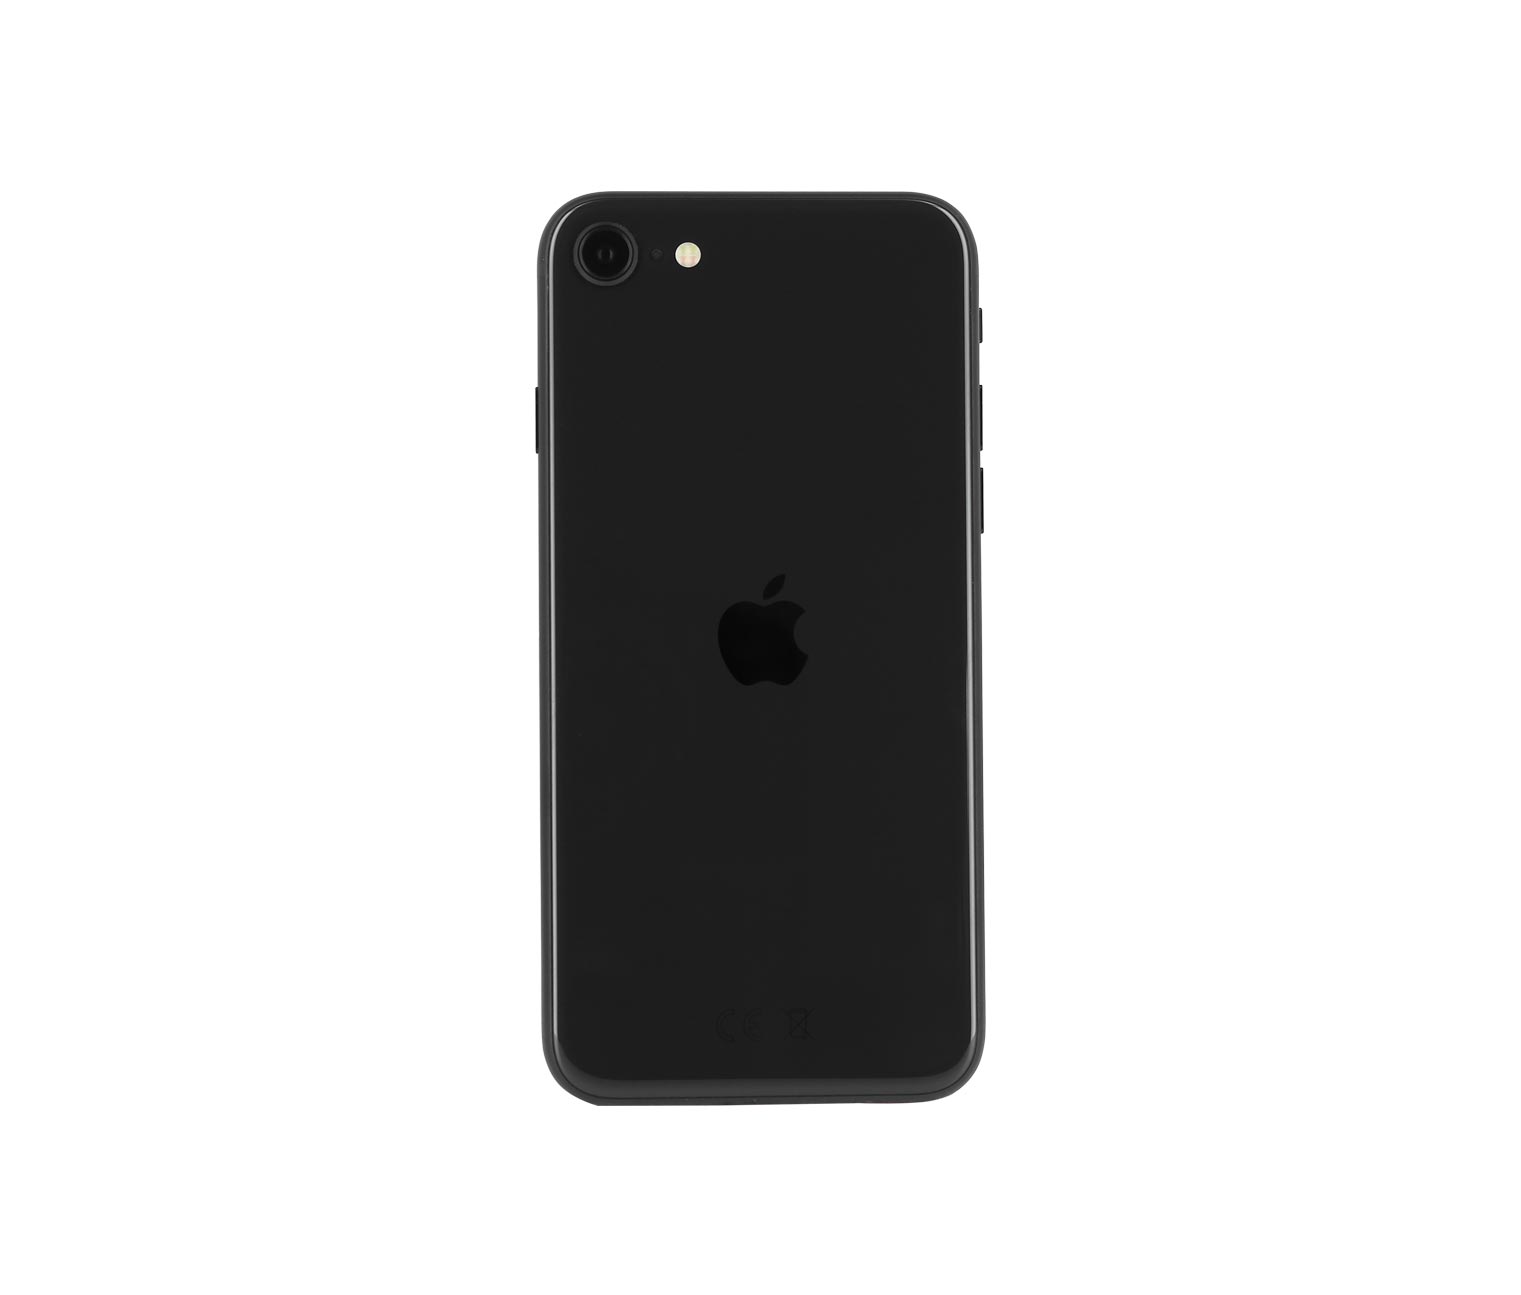 Apple iPhone SE 2020 64GB black online bestellen bei Tchibo 518561